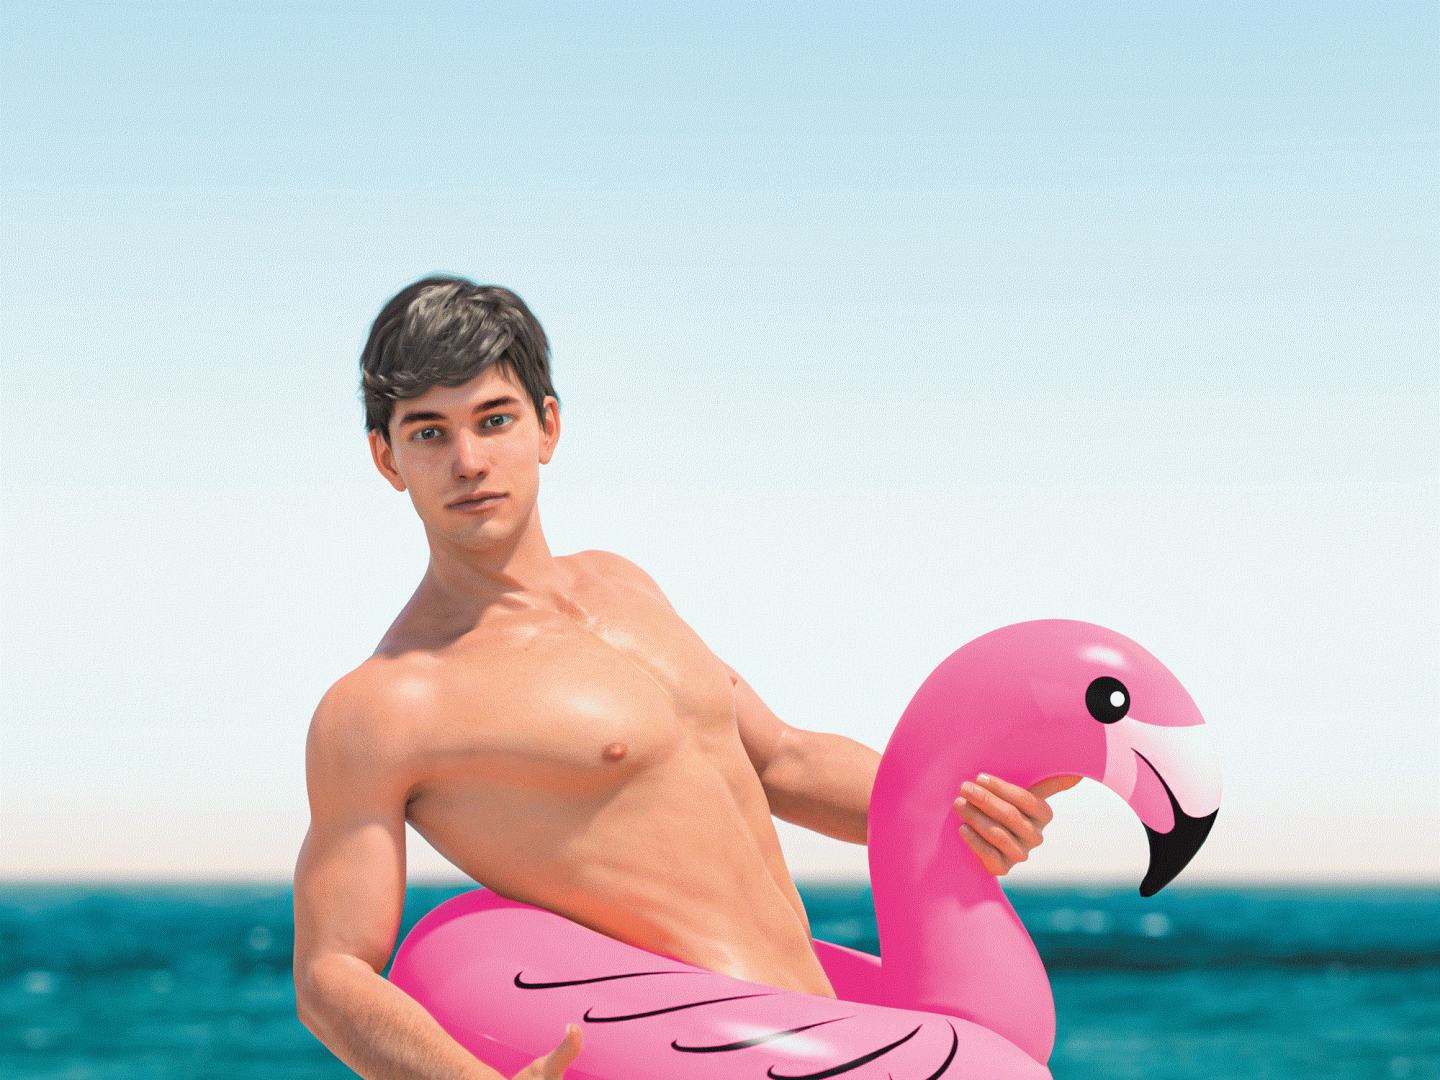 Auf dem Bild ist ein muskulöser Mann mit braunen Haaren am Meer, der einen Daumen nach oben zeigt. Er ist nackt bis auf einen pinken Flamingo-Schwimmring um seine Hüfte.